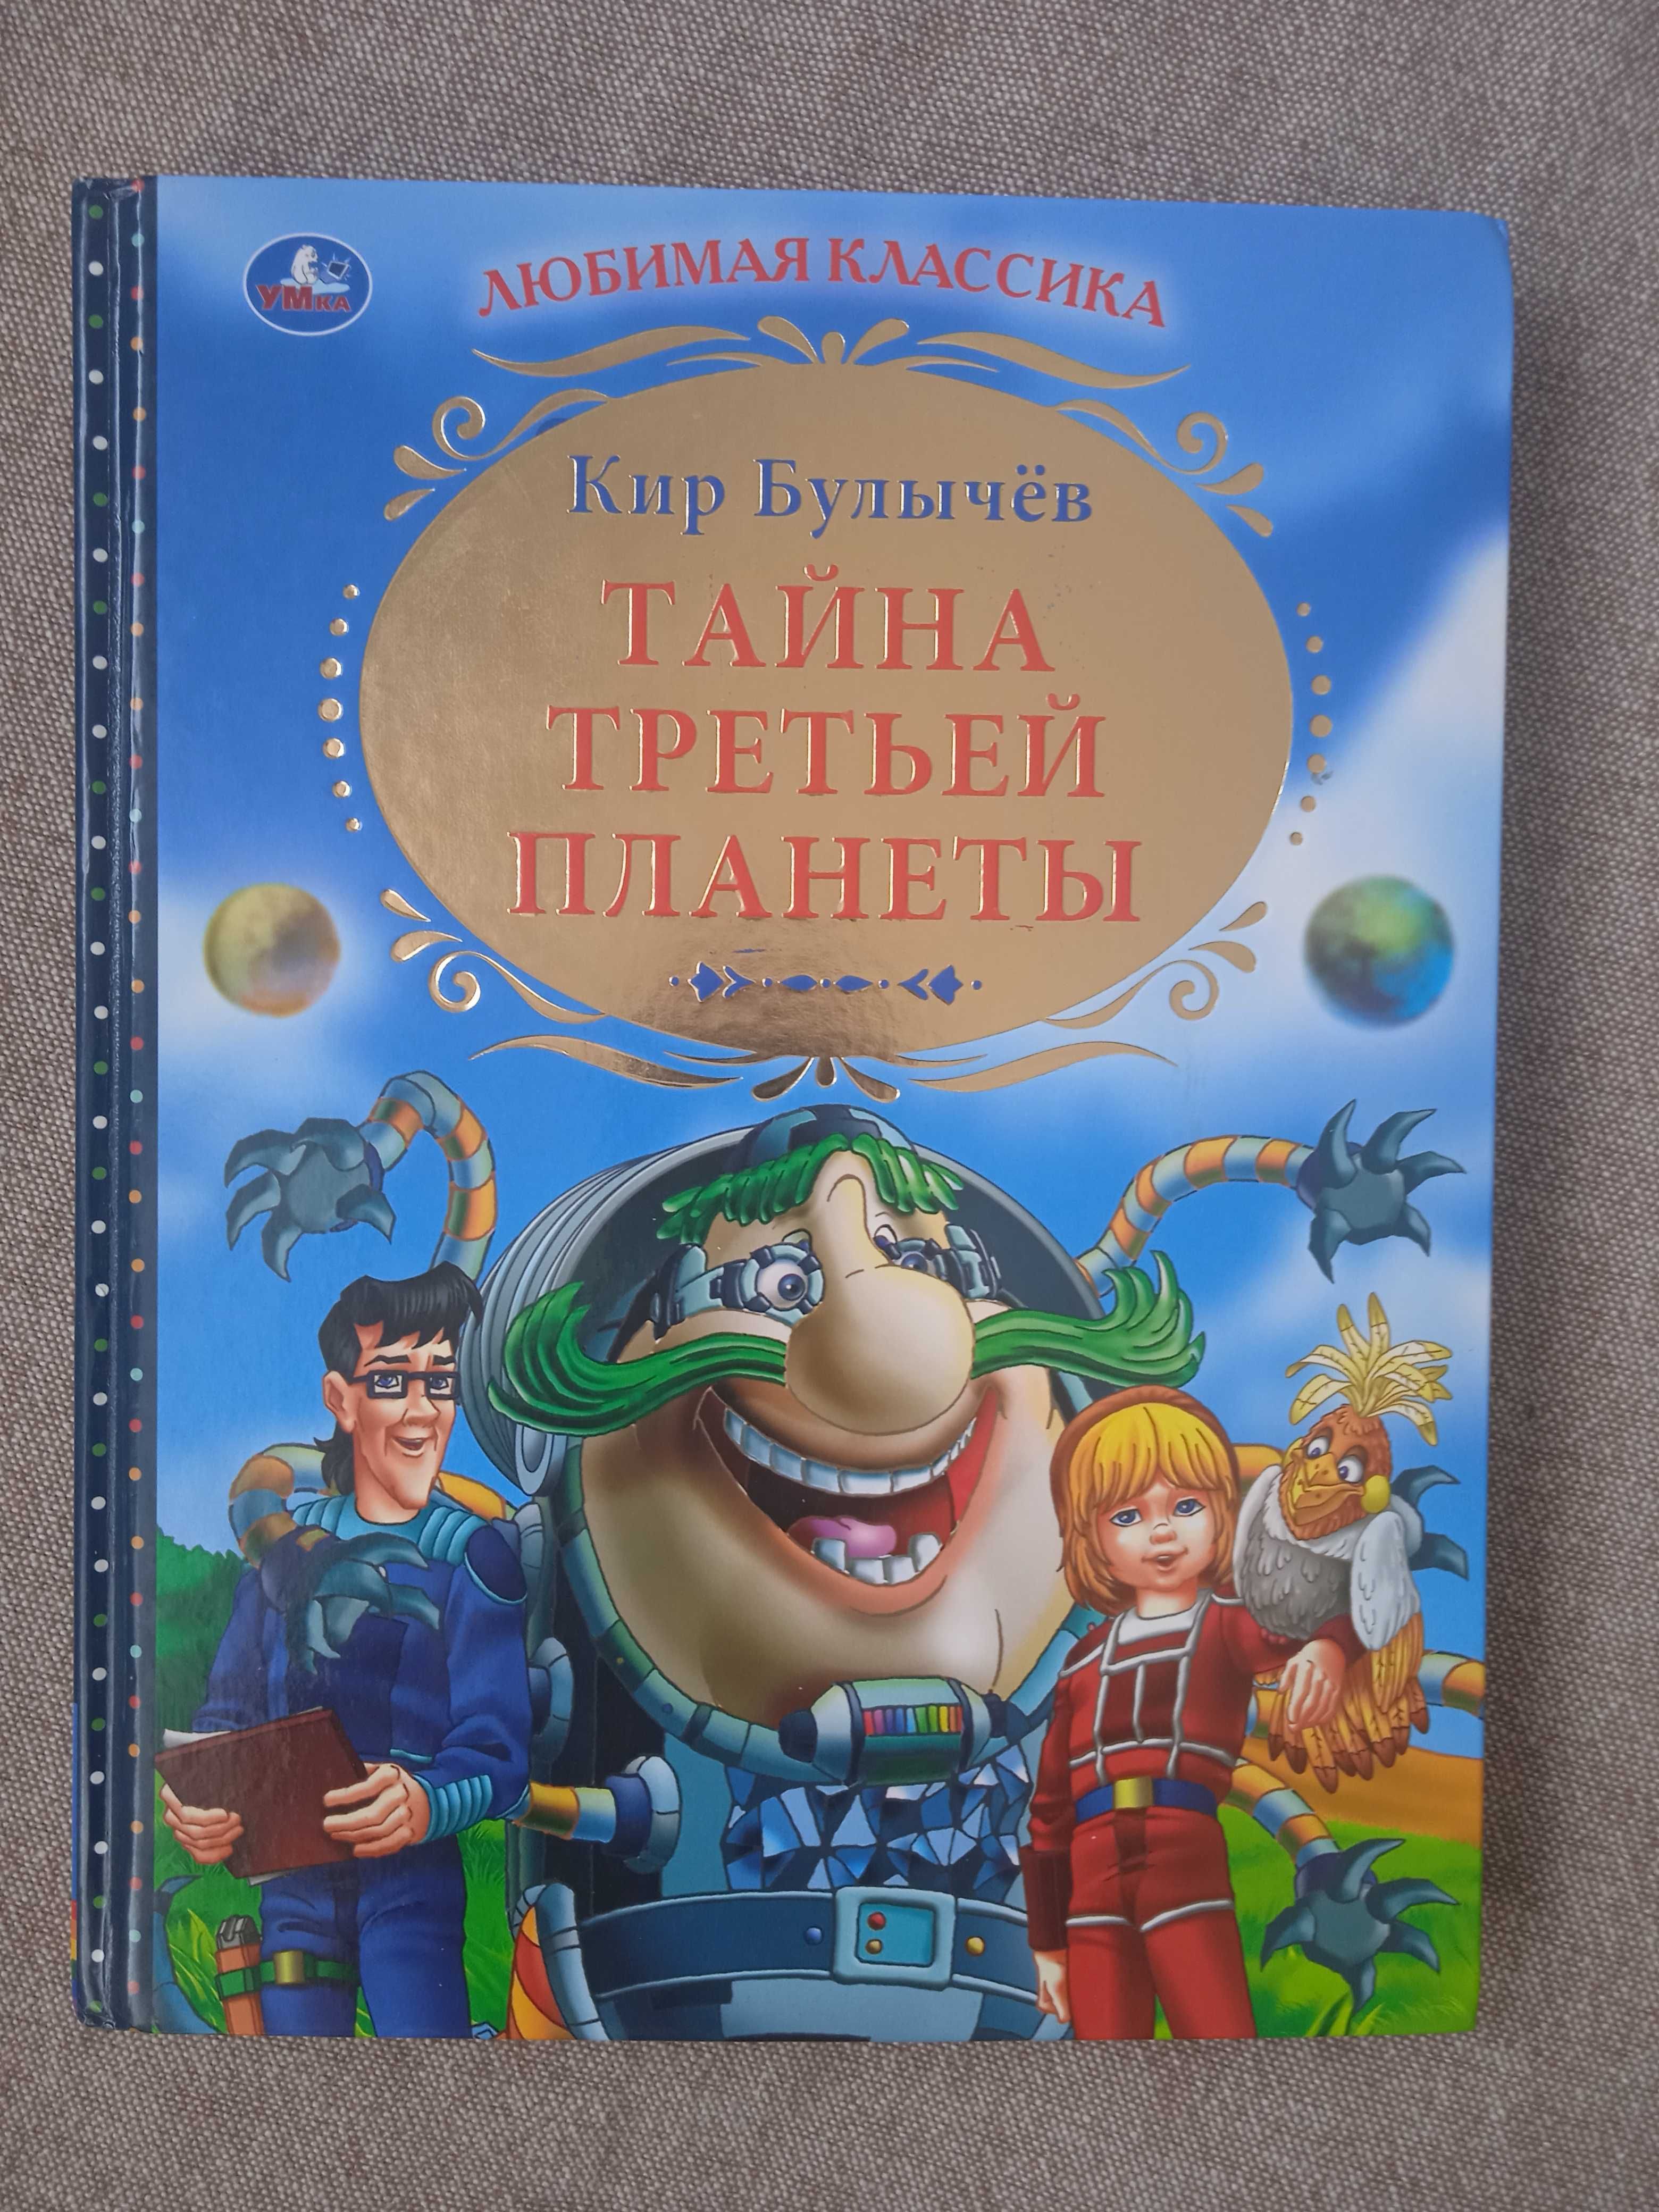 Продаются детские книги по 1000теңге+подарок Доктор Айболит